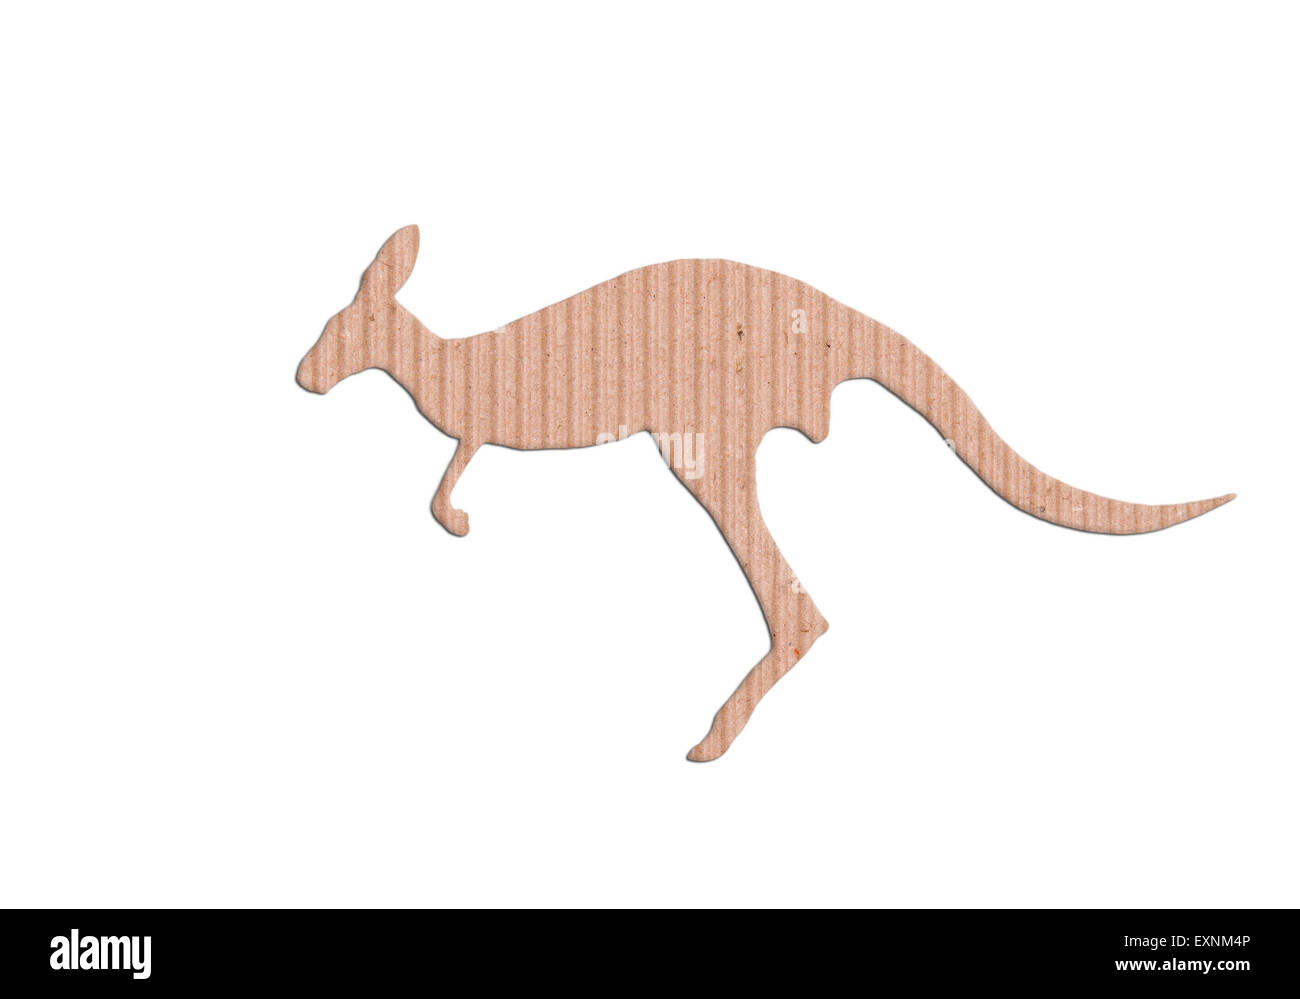 kangaroo shape paper box on white background Stock Photo